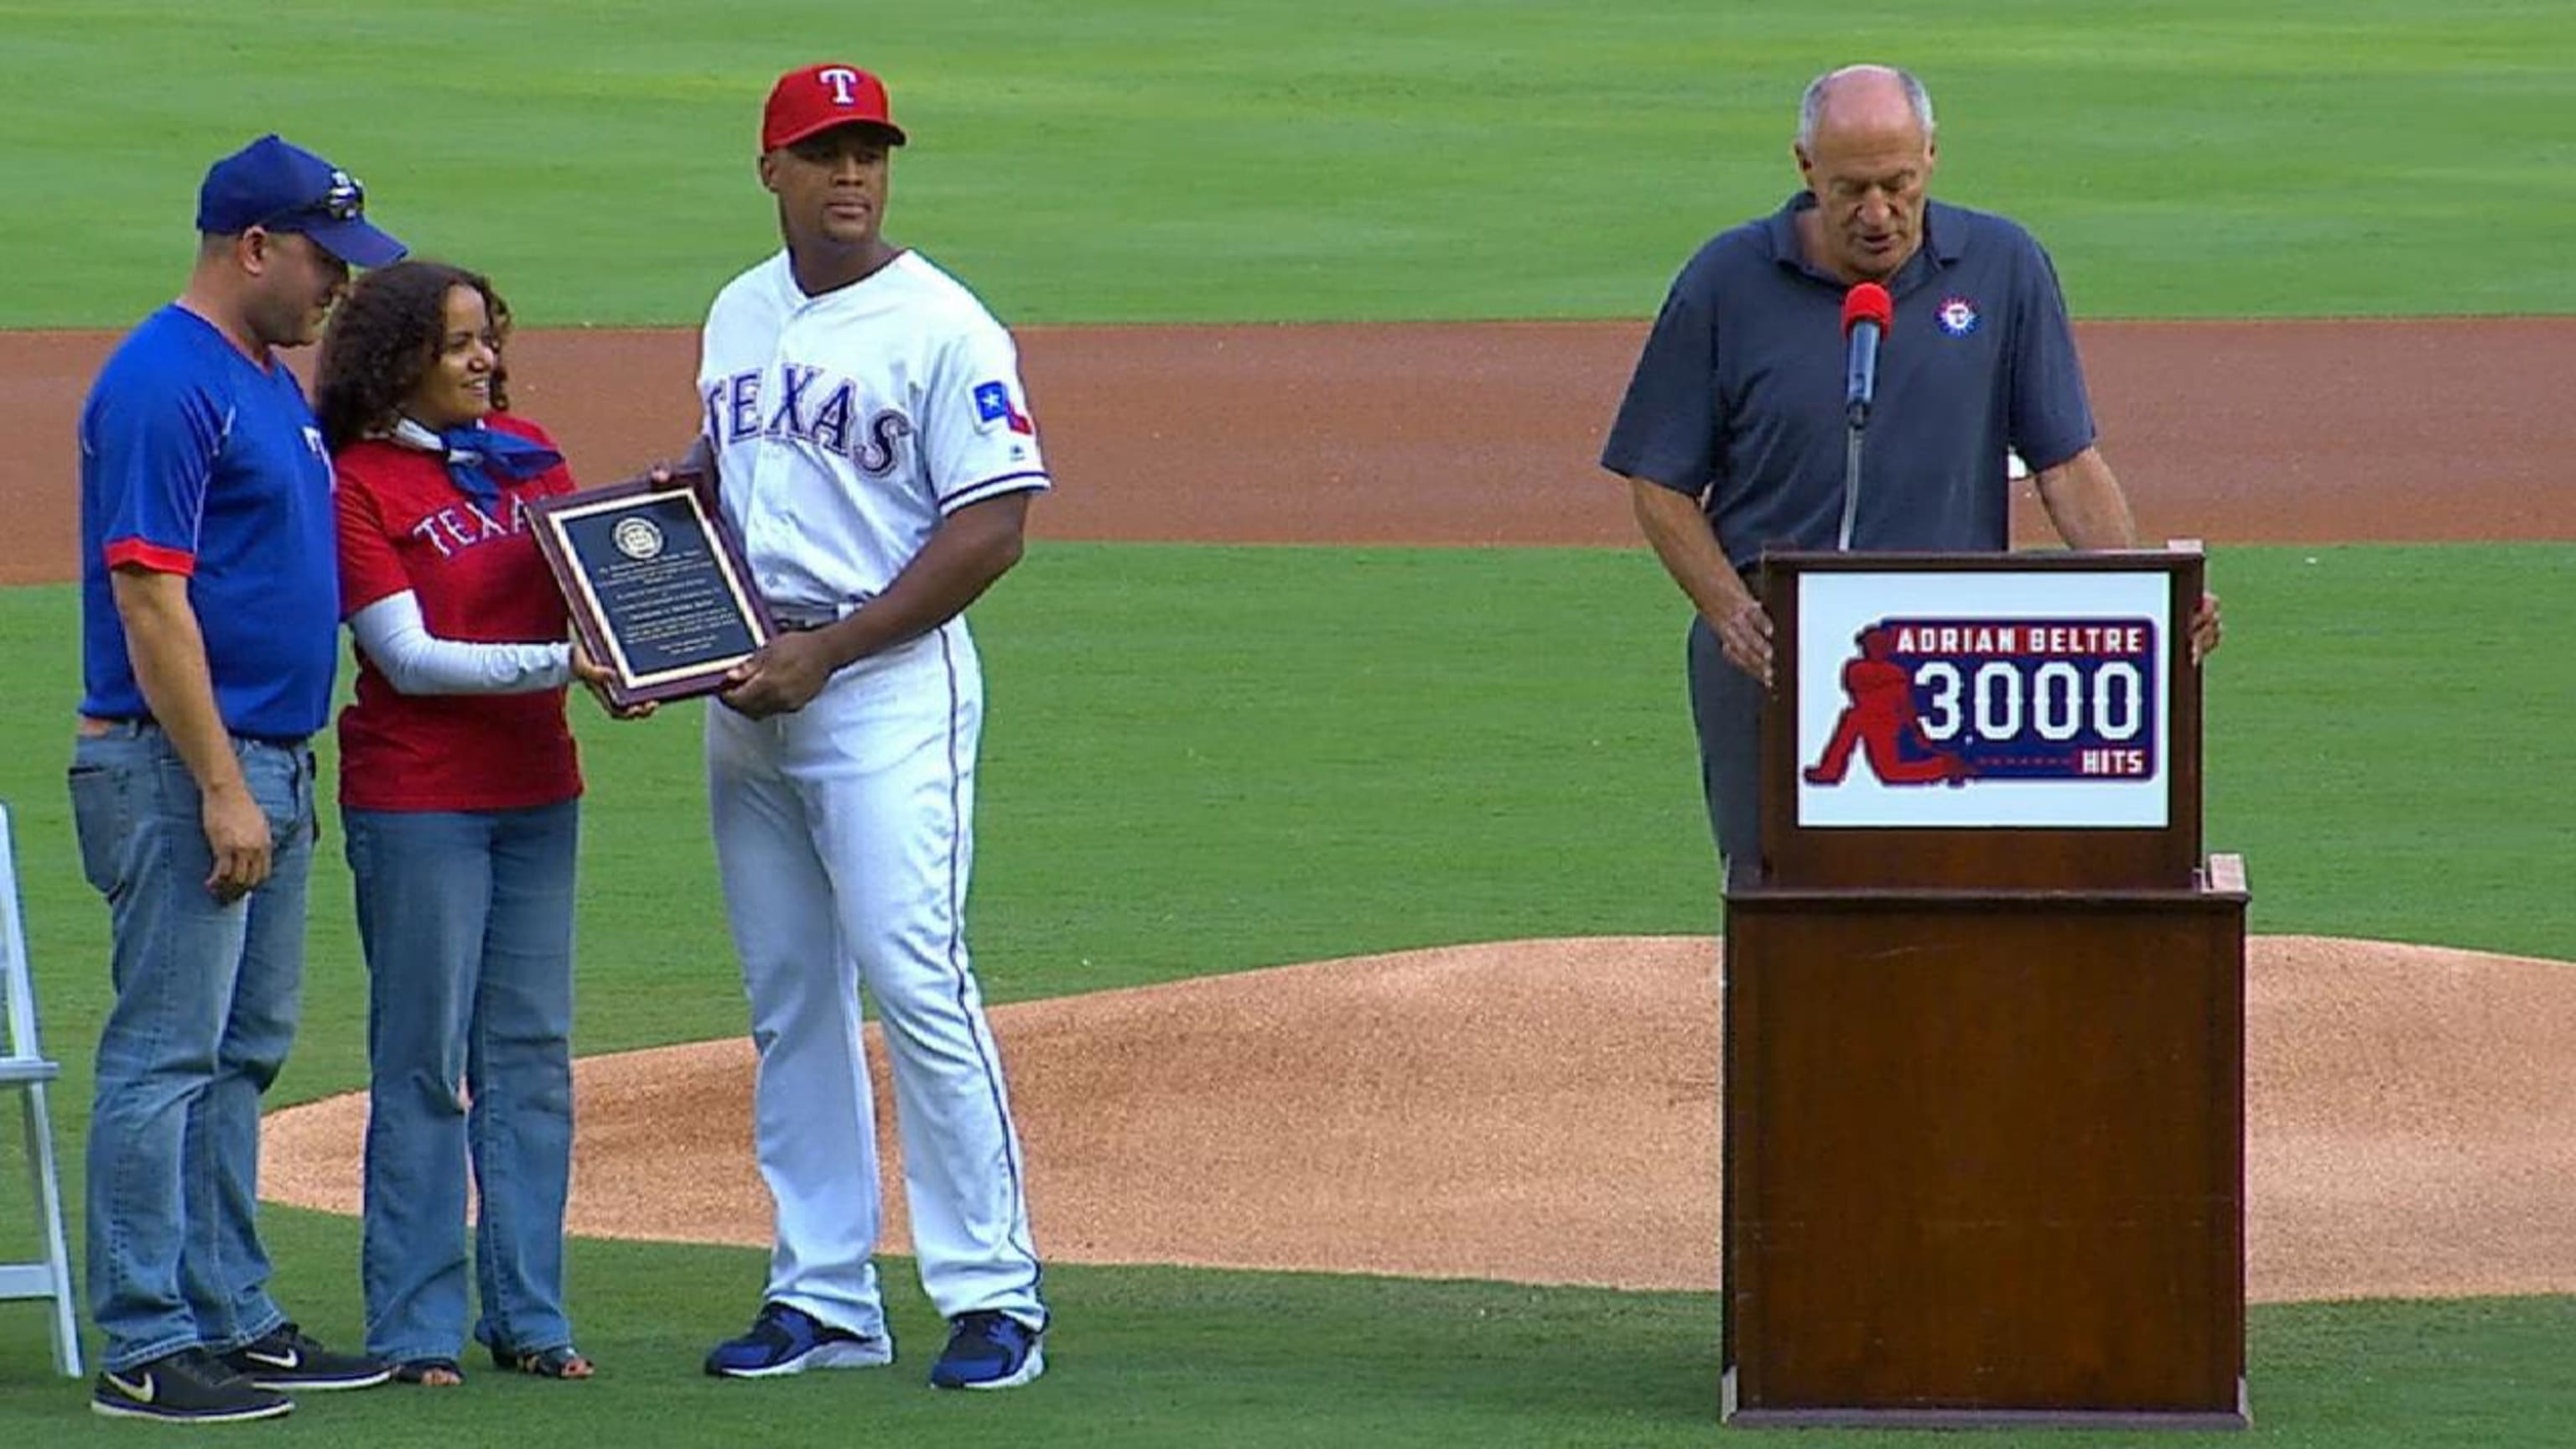 Rangers honor Adrian Beltre for 3,000th hit